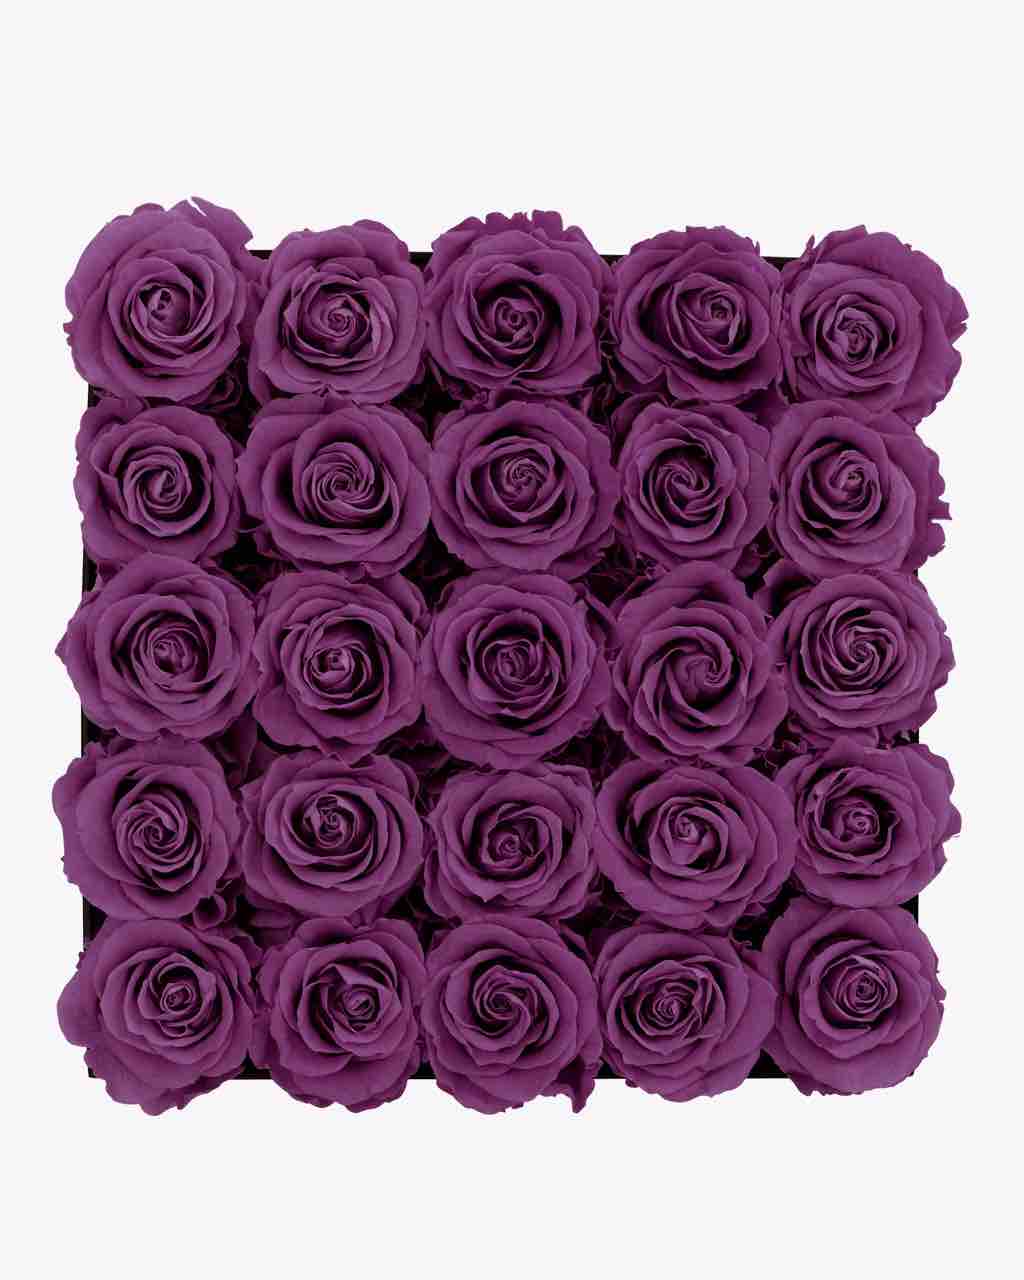 Rose Box - Large Luxury Box